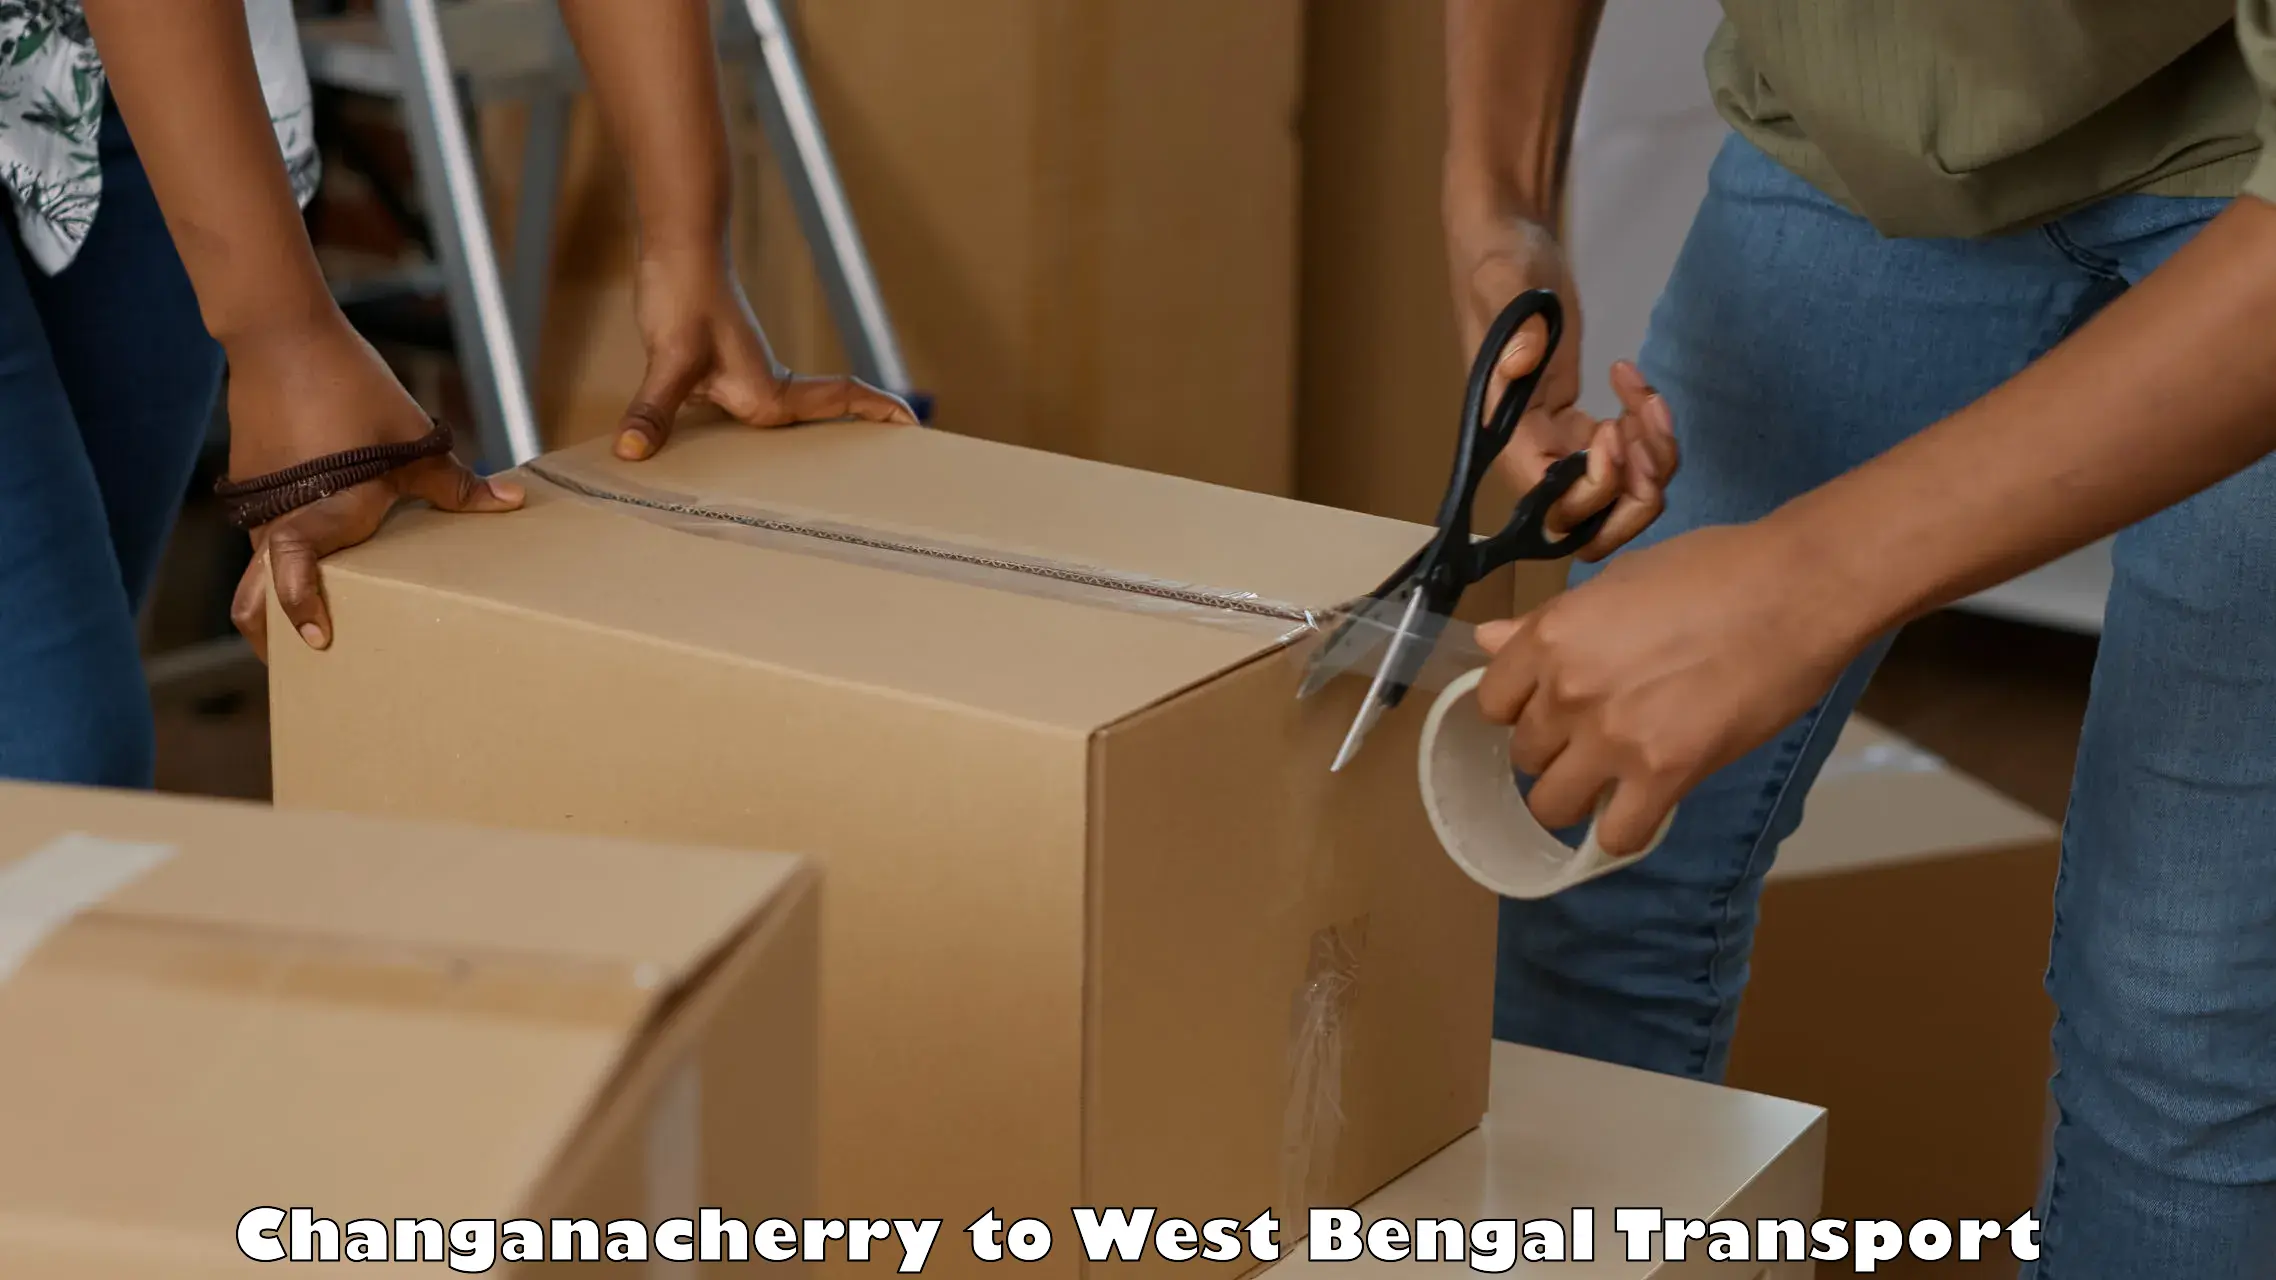 Shipping partner Changanacherry to Bhadreswar